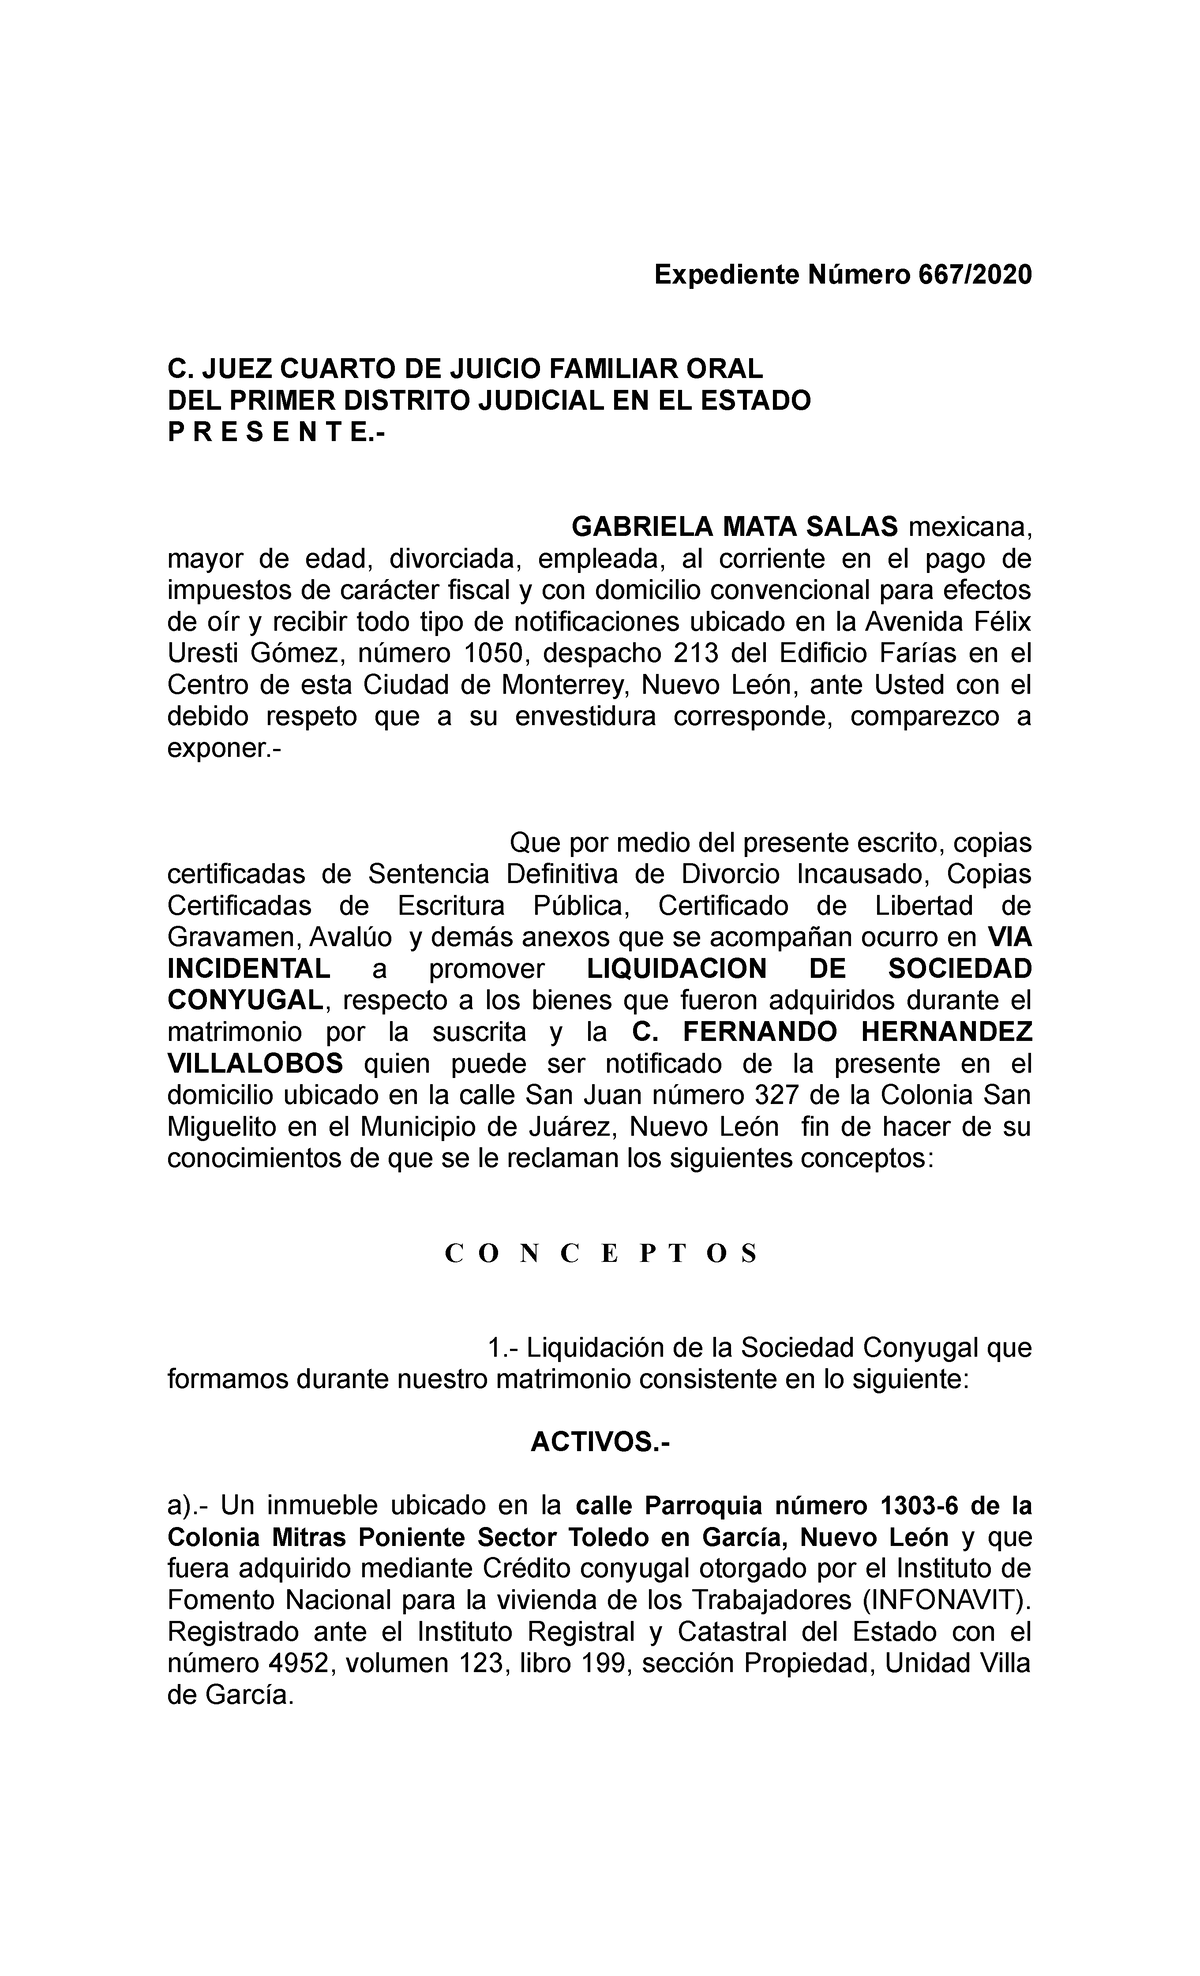 Incidente Liquidacion GABY Salas - Expediente Número 667/ C. JUEZ CUARTO DE  JUICIO FAMILIAR ORAL DEL - Studocu